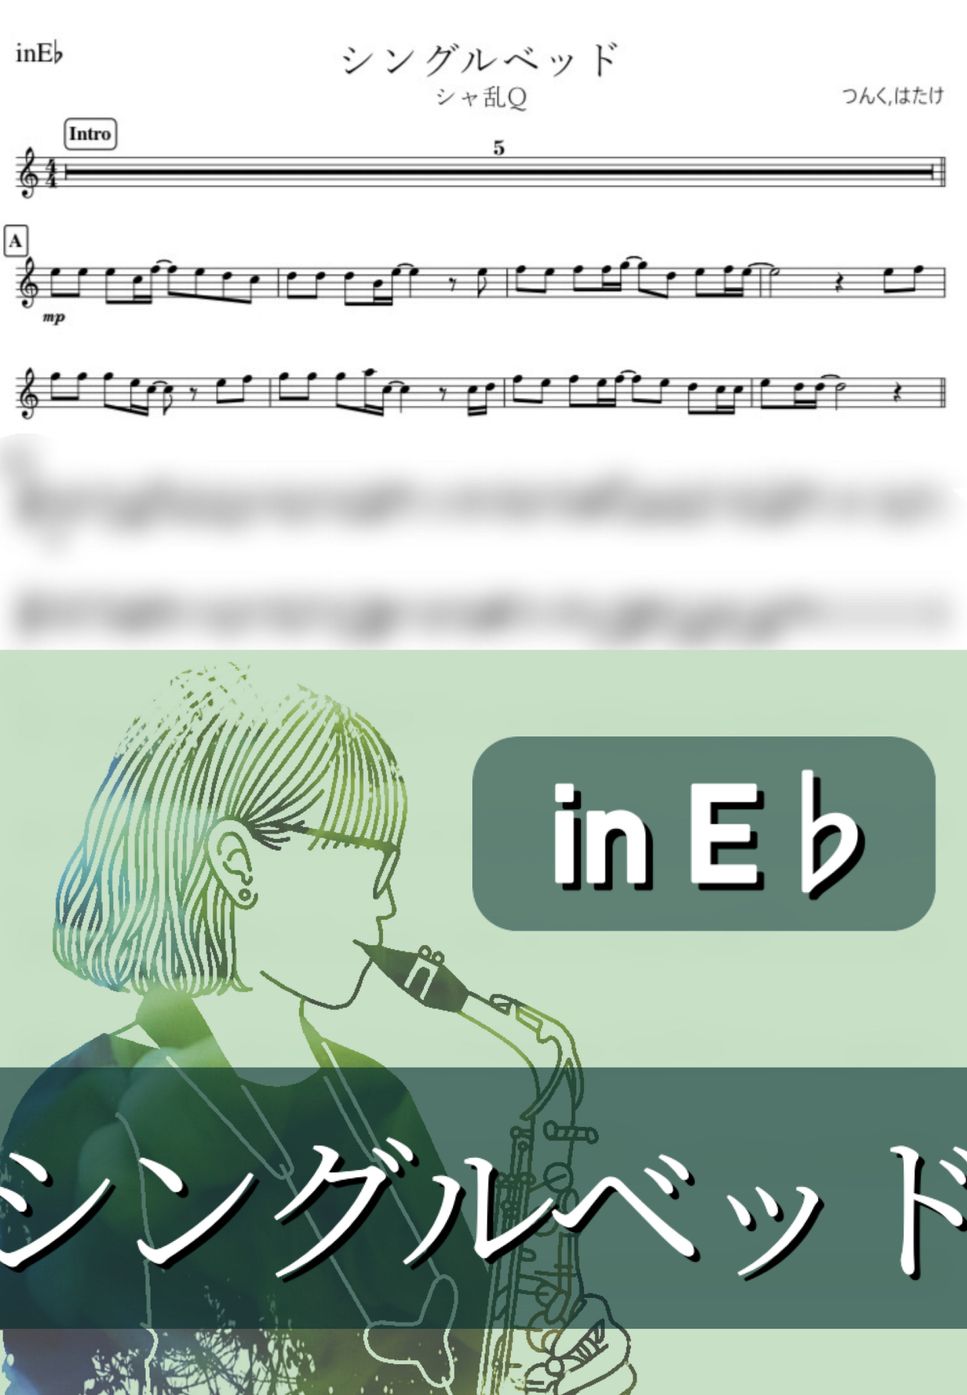 シャ乱Q - シングルベッド (E♭) by kanamusic